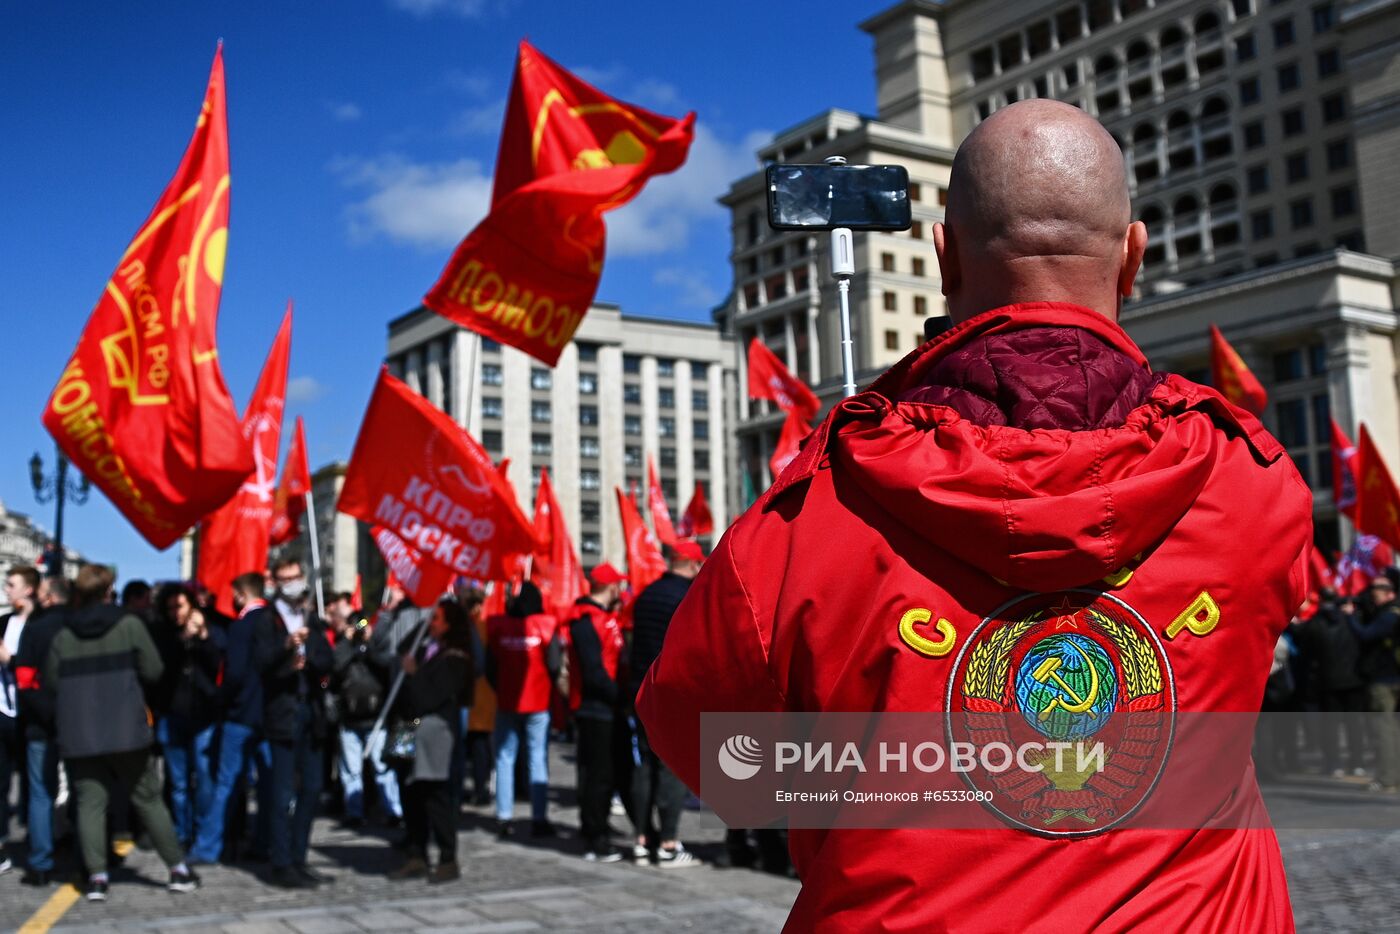 Возложение цветов сторонниками КПРФ в День международной солидарности трудящихся